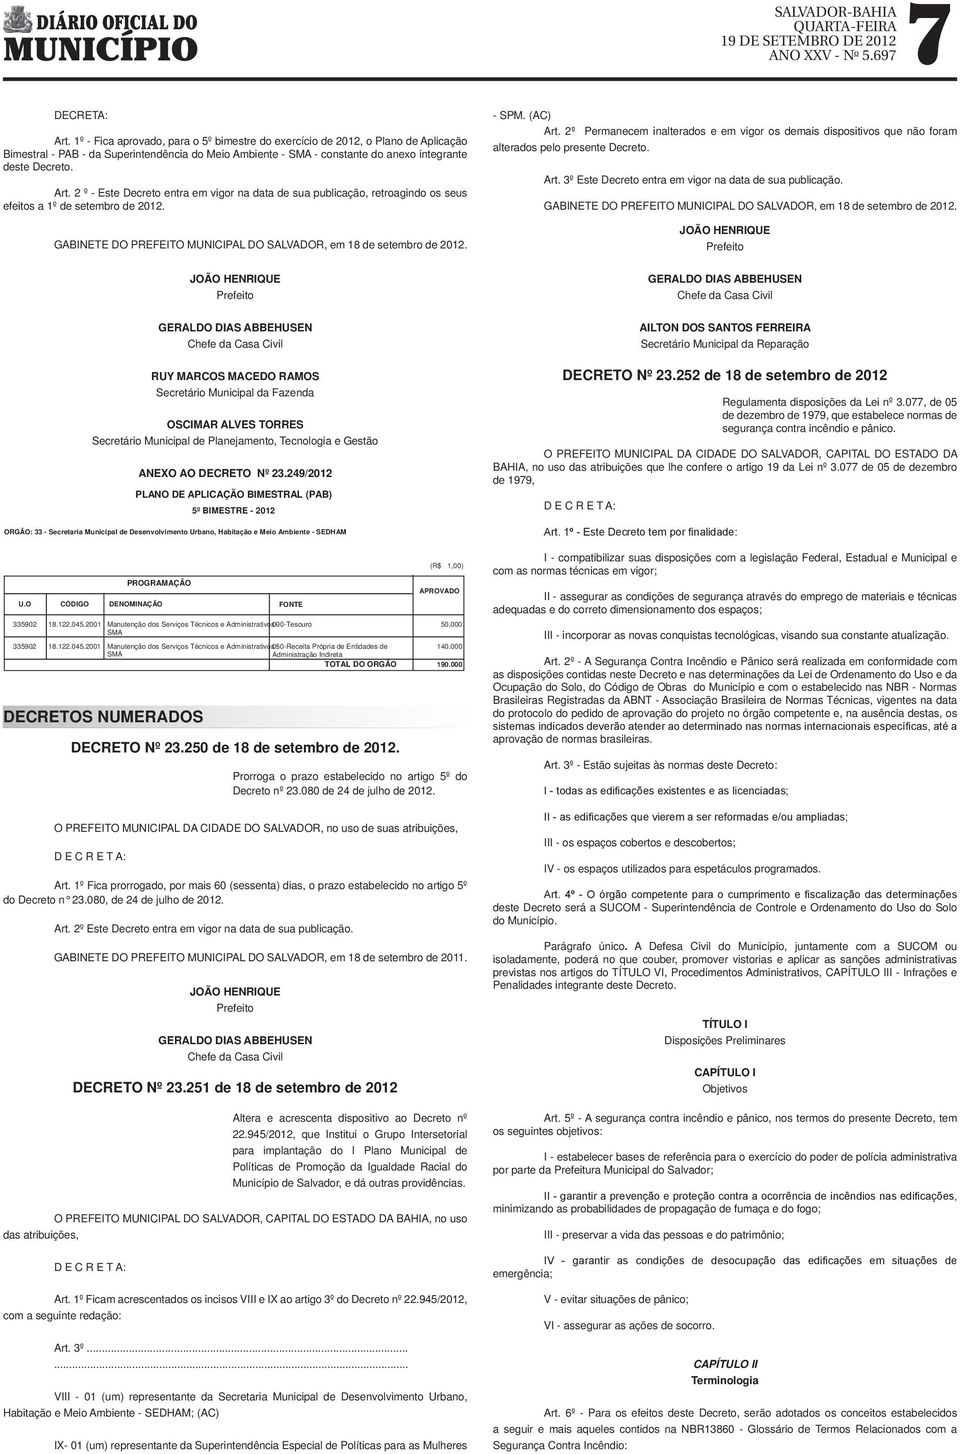 2 º - Este Decreto entra em vigor na data de sua publicação, retroagindo os seus efeitos a 1º de setembro de 2012. U.O GABINETE DO PREFEITO MUNICIPAL DO SALVADOR, em 18 de setembro de 2012.